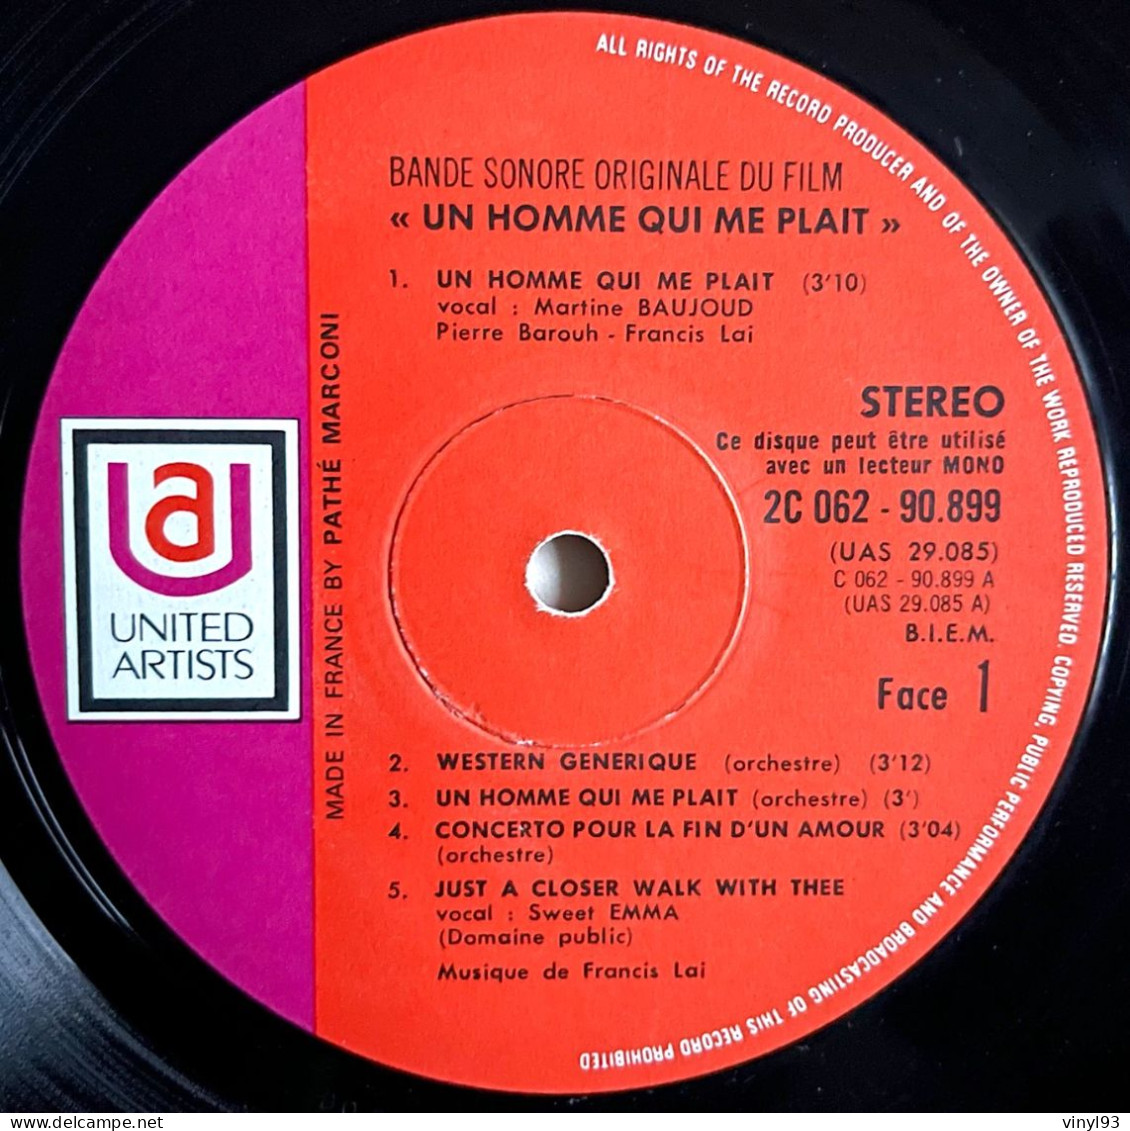 1969 - Bande Originale Du Film De Claude Lelouch "Un Homme Qui Me Plait" Avec Belmondo - LP 33T - United Artists - Soundtracks, Film Music